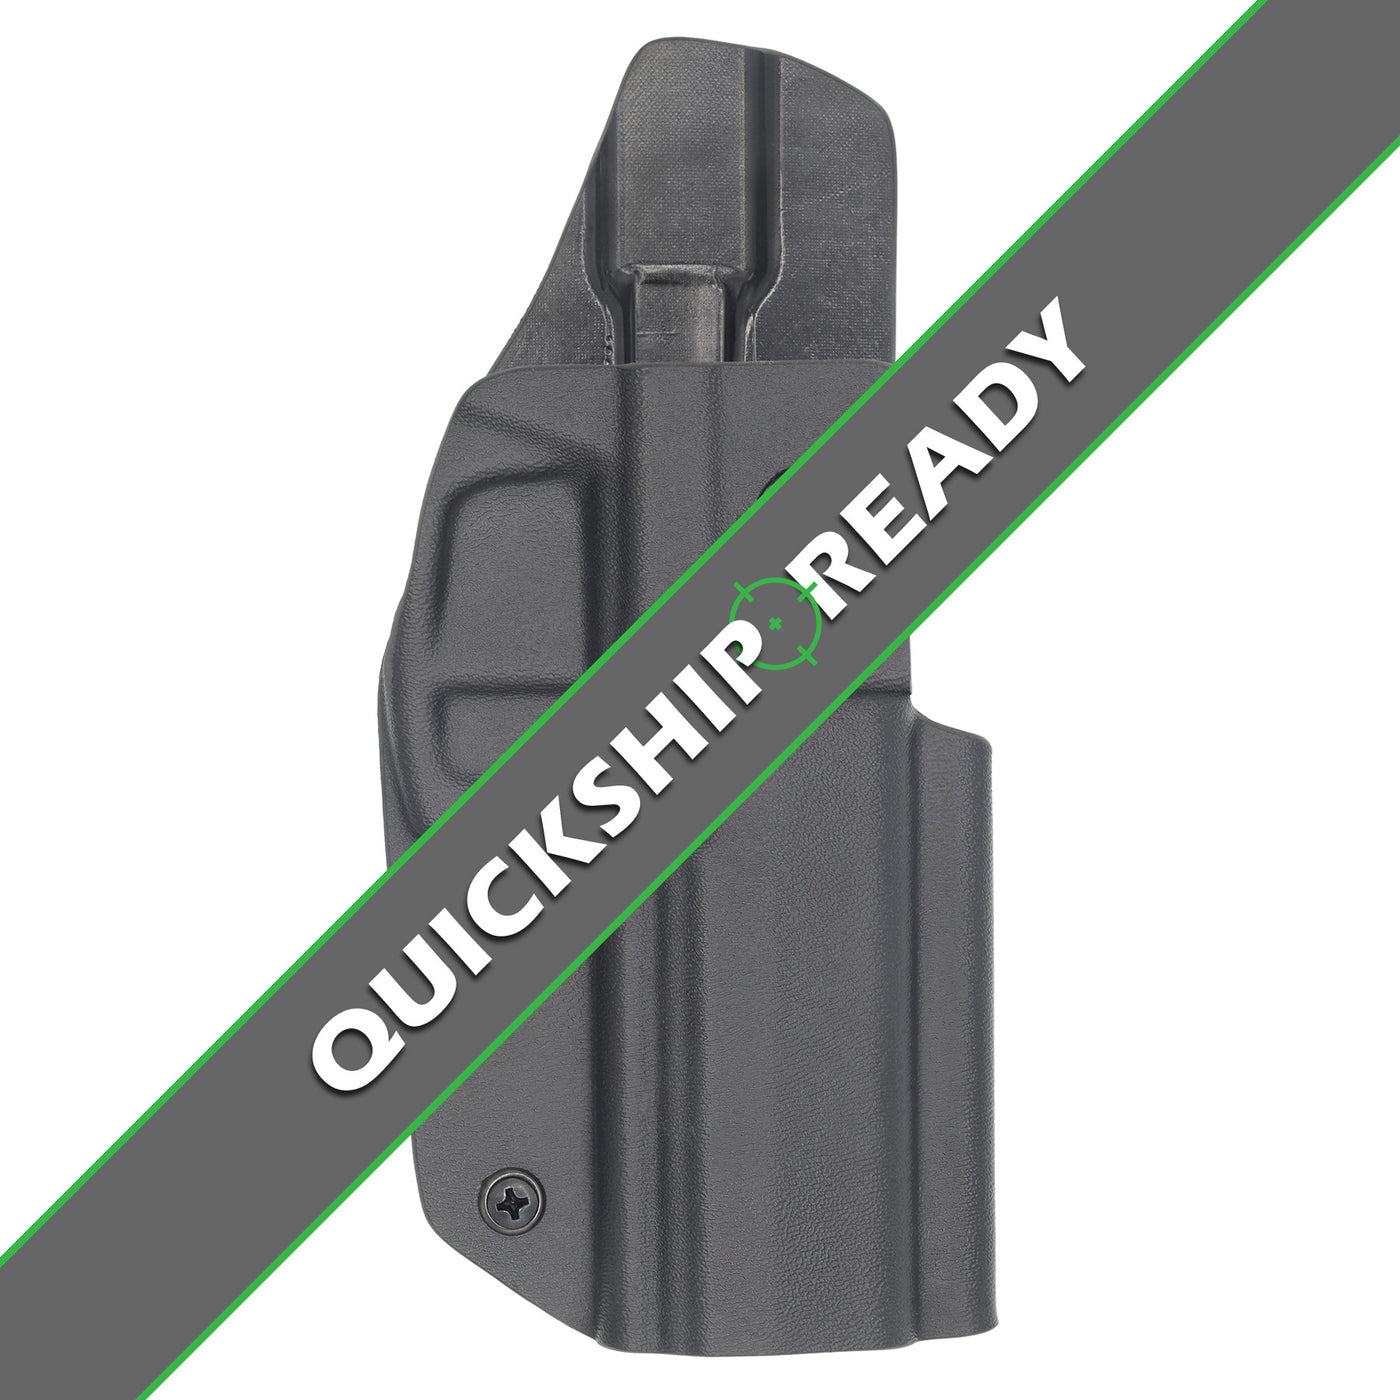 Heckler & Koch P30L Quickship Compitetion holster for USPSA, IDPA and 3-Gun.